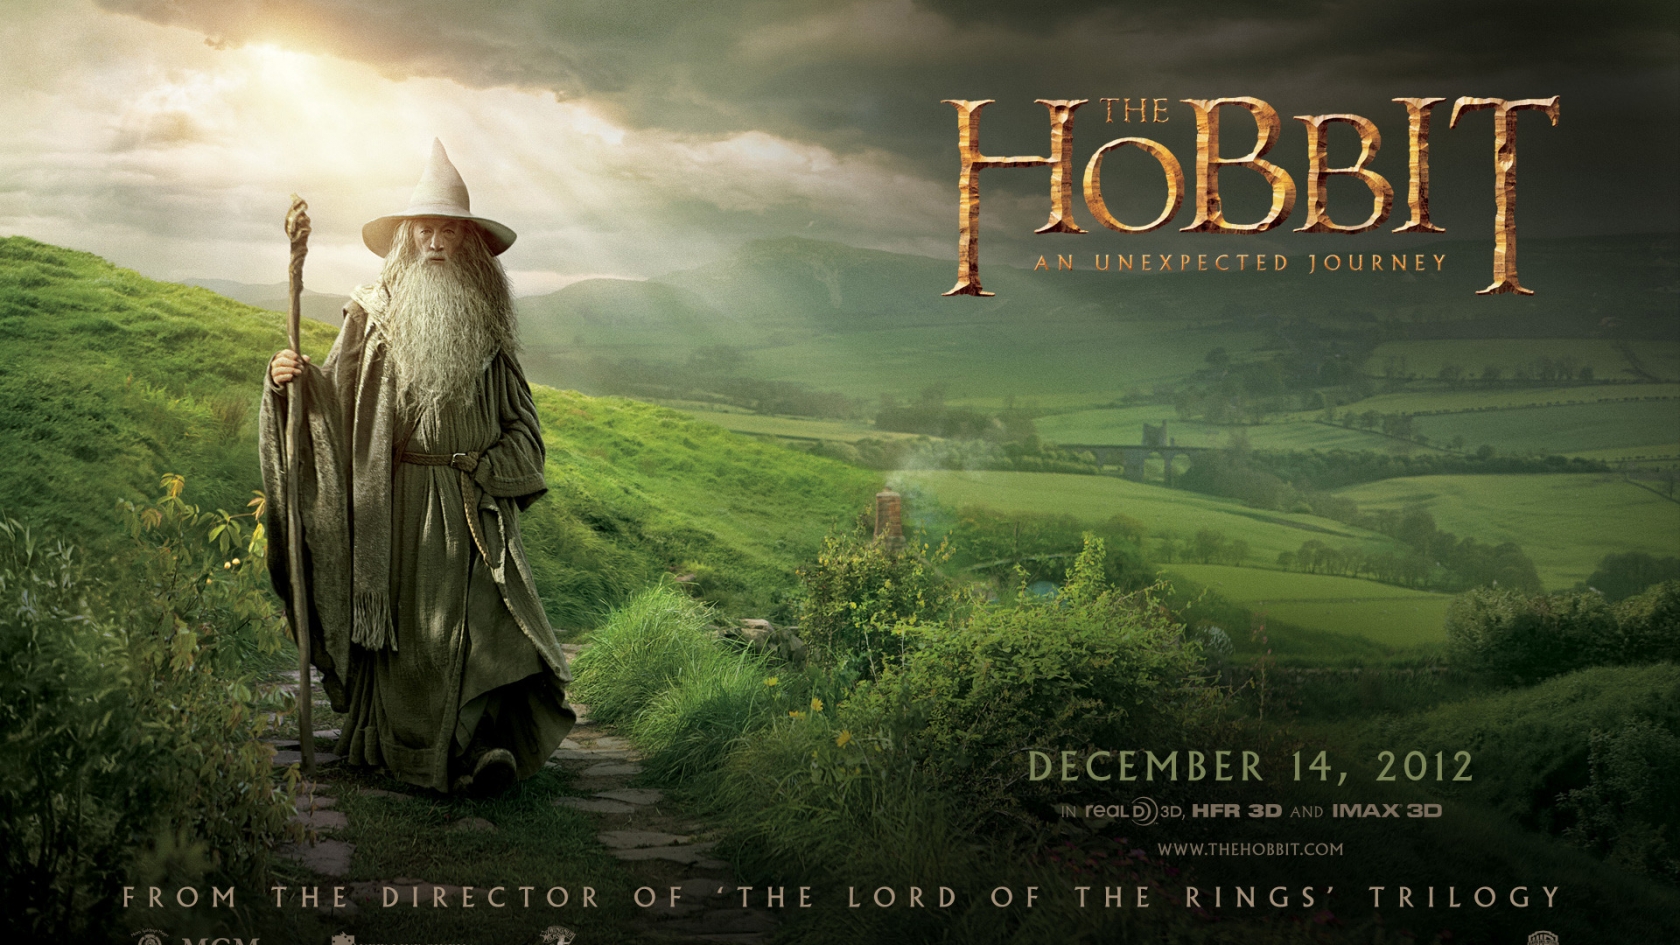 The Hobbit Gandalf for 1680 x 945 HDTV resolution